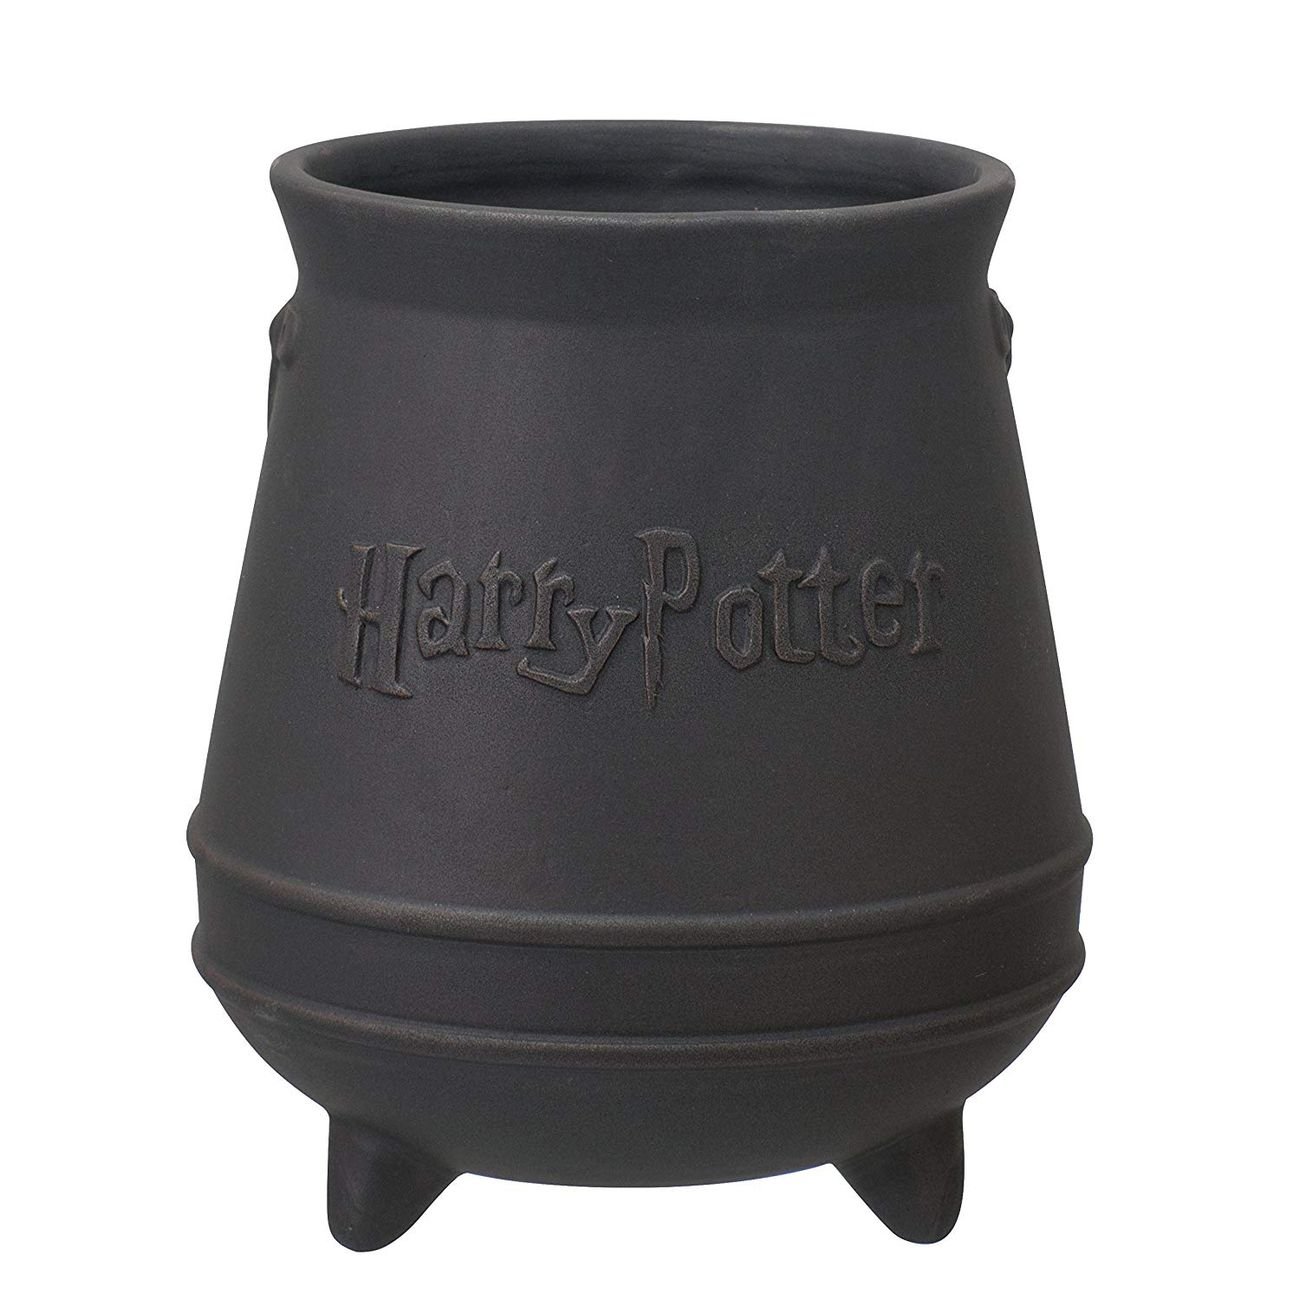 Tazza in ceramica a forma di calderone, ispirato da Harry Potter